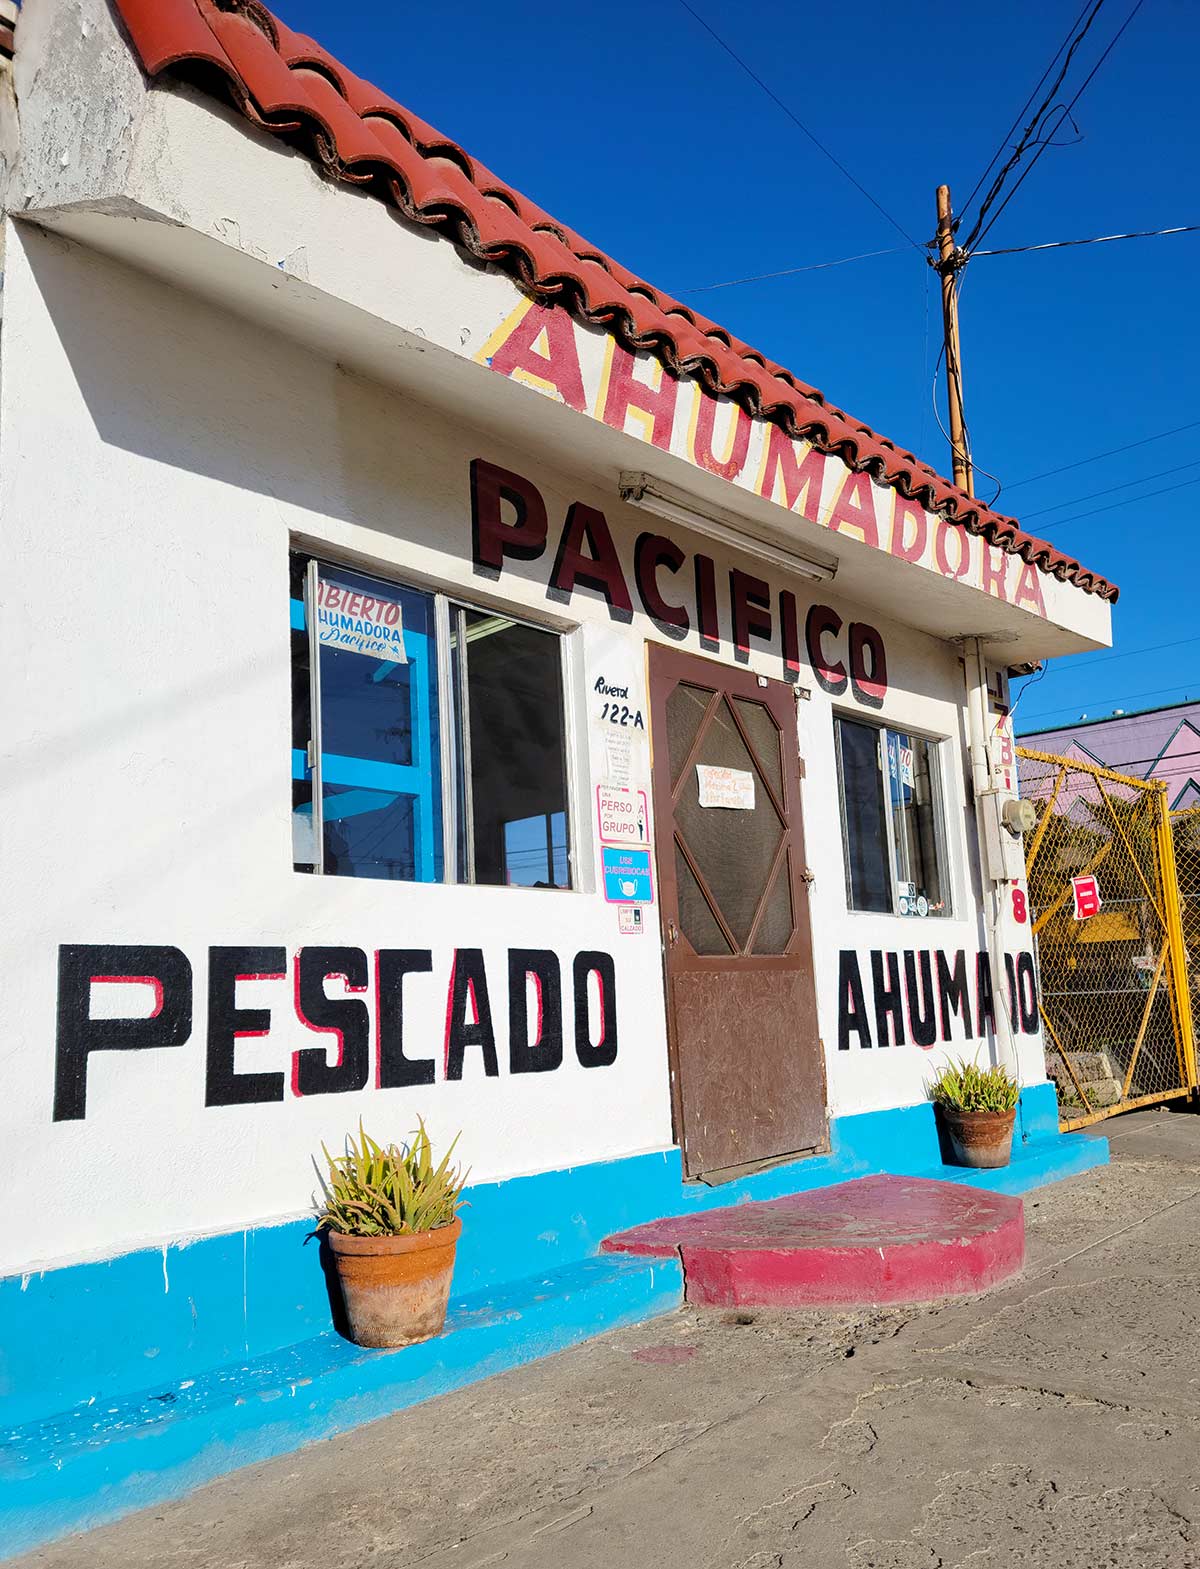 Ahumadora del Pacifico in Ensenada, Baja. 